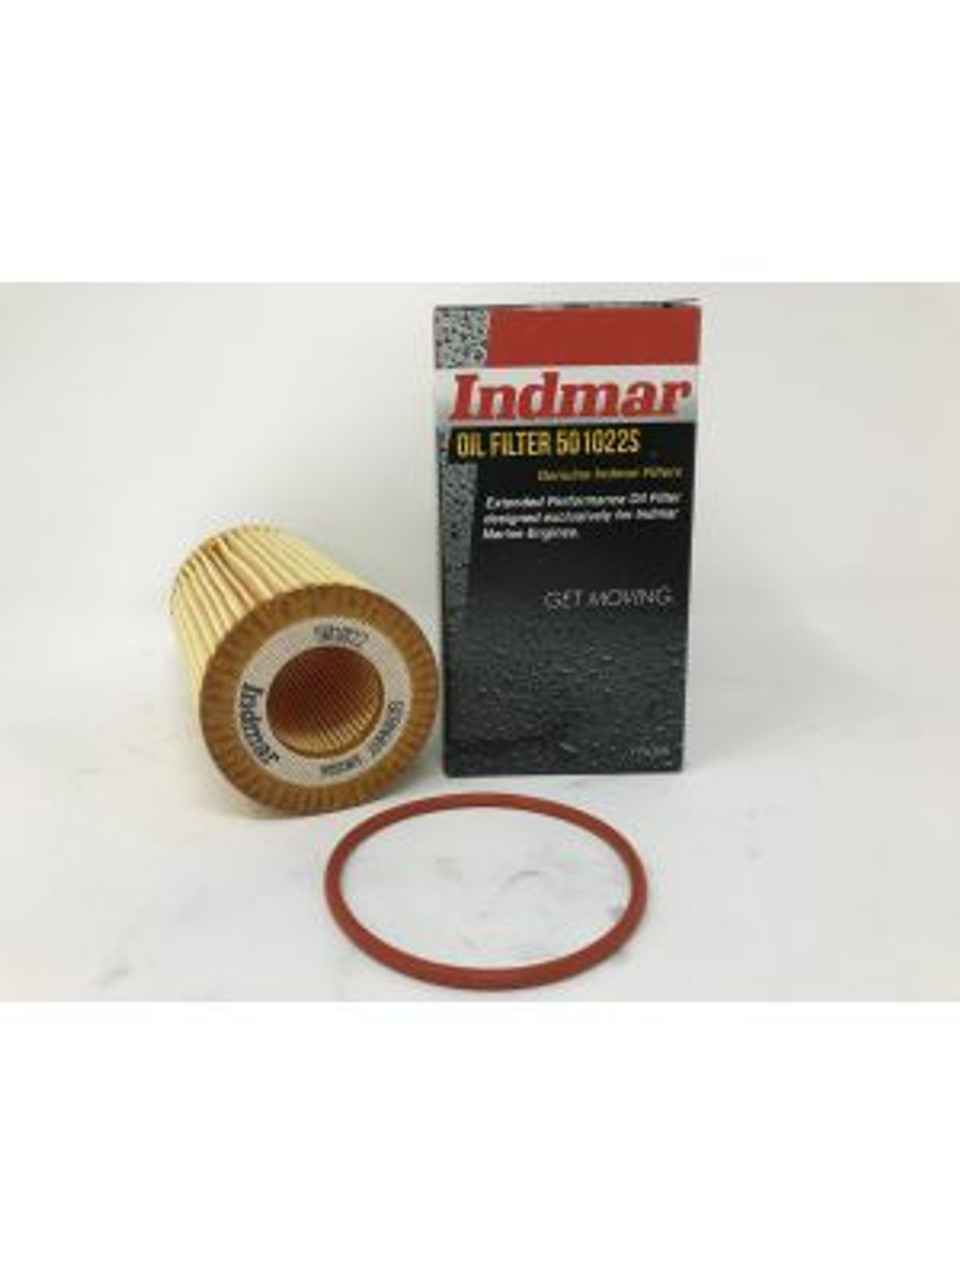 Indmar 501022 Oil Filter Cartridge for 6.2L Ford Raptor Engines